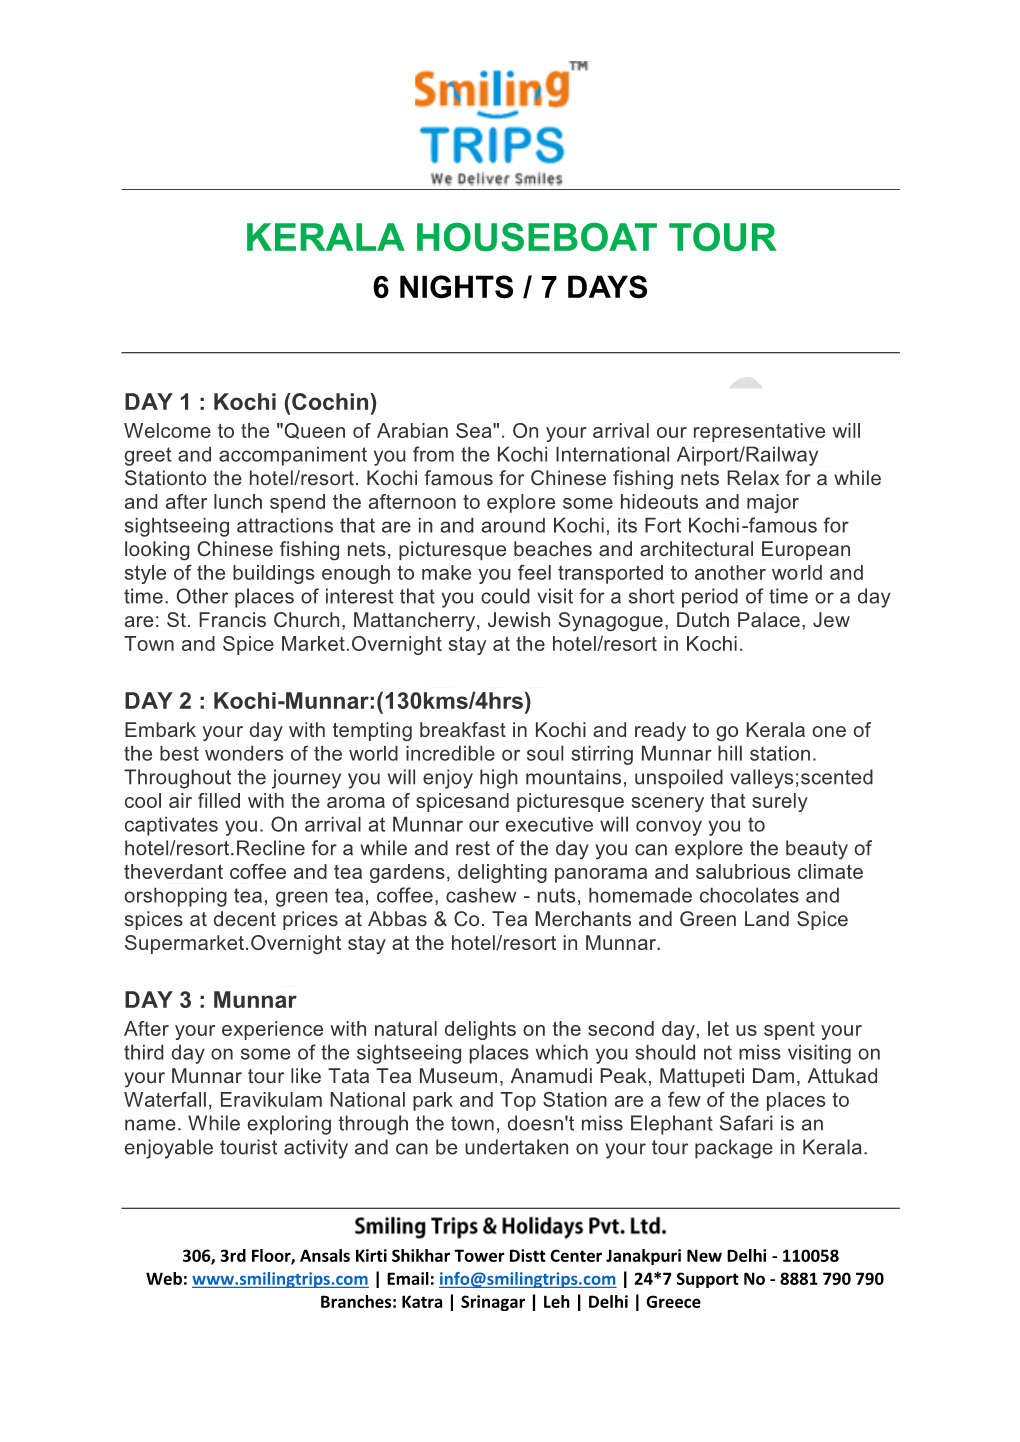 Kerala Houseboat Tour 6 Nights / 7 Days